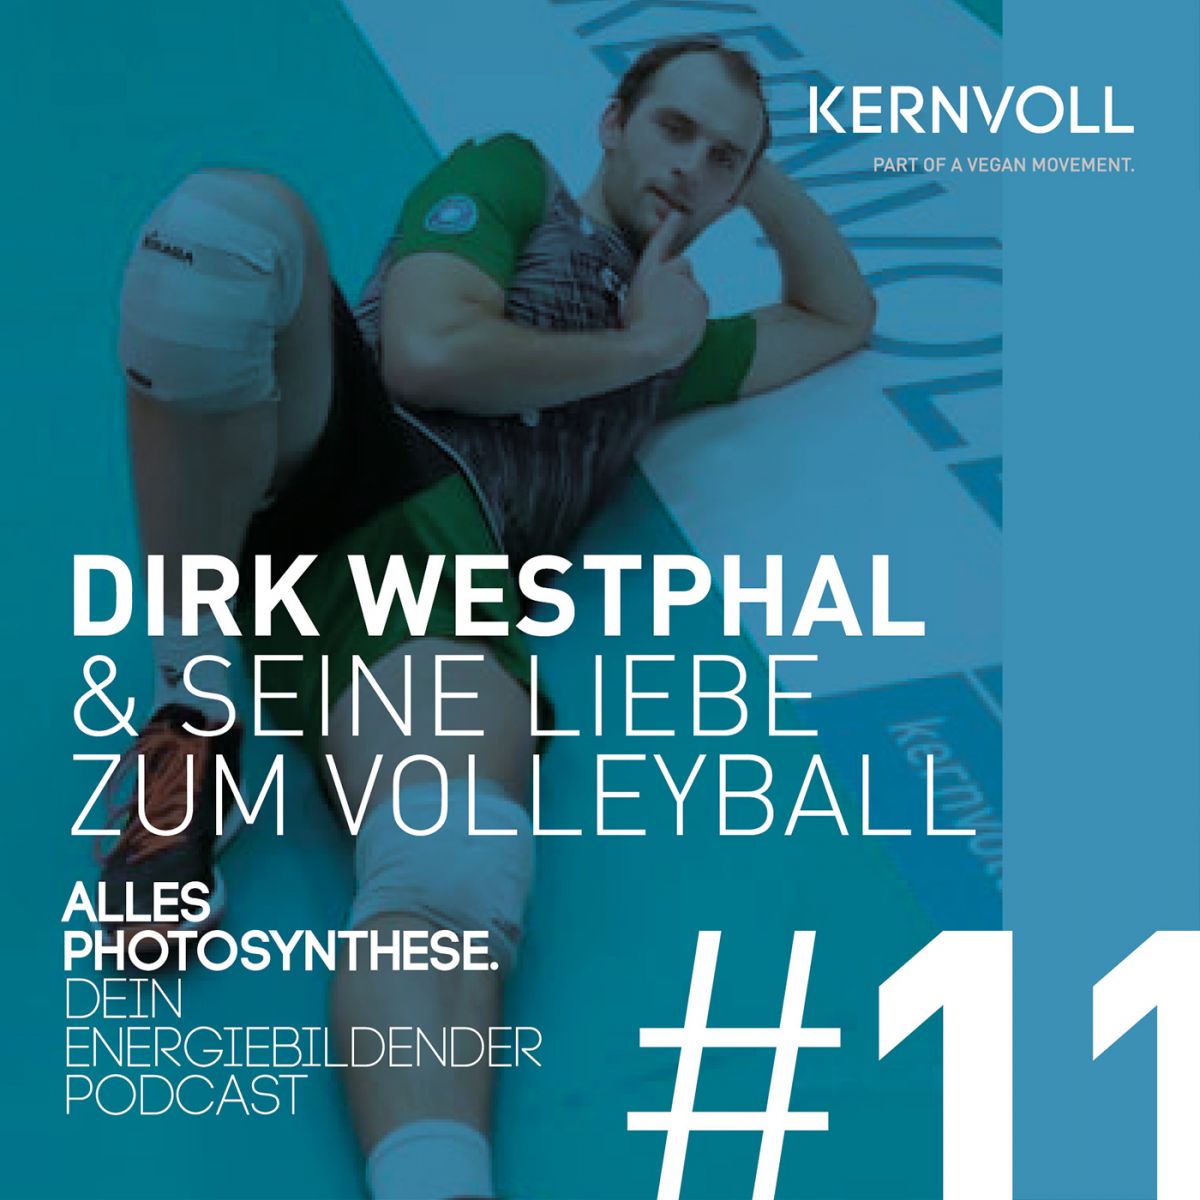 Dirk Westphal & seine Liebe zum Volleyball